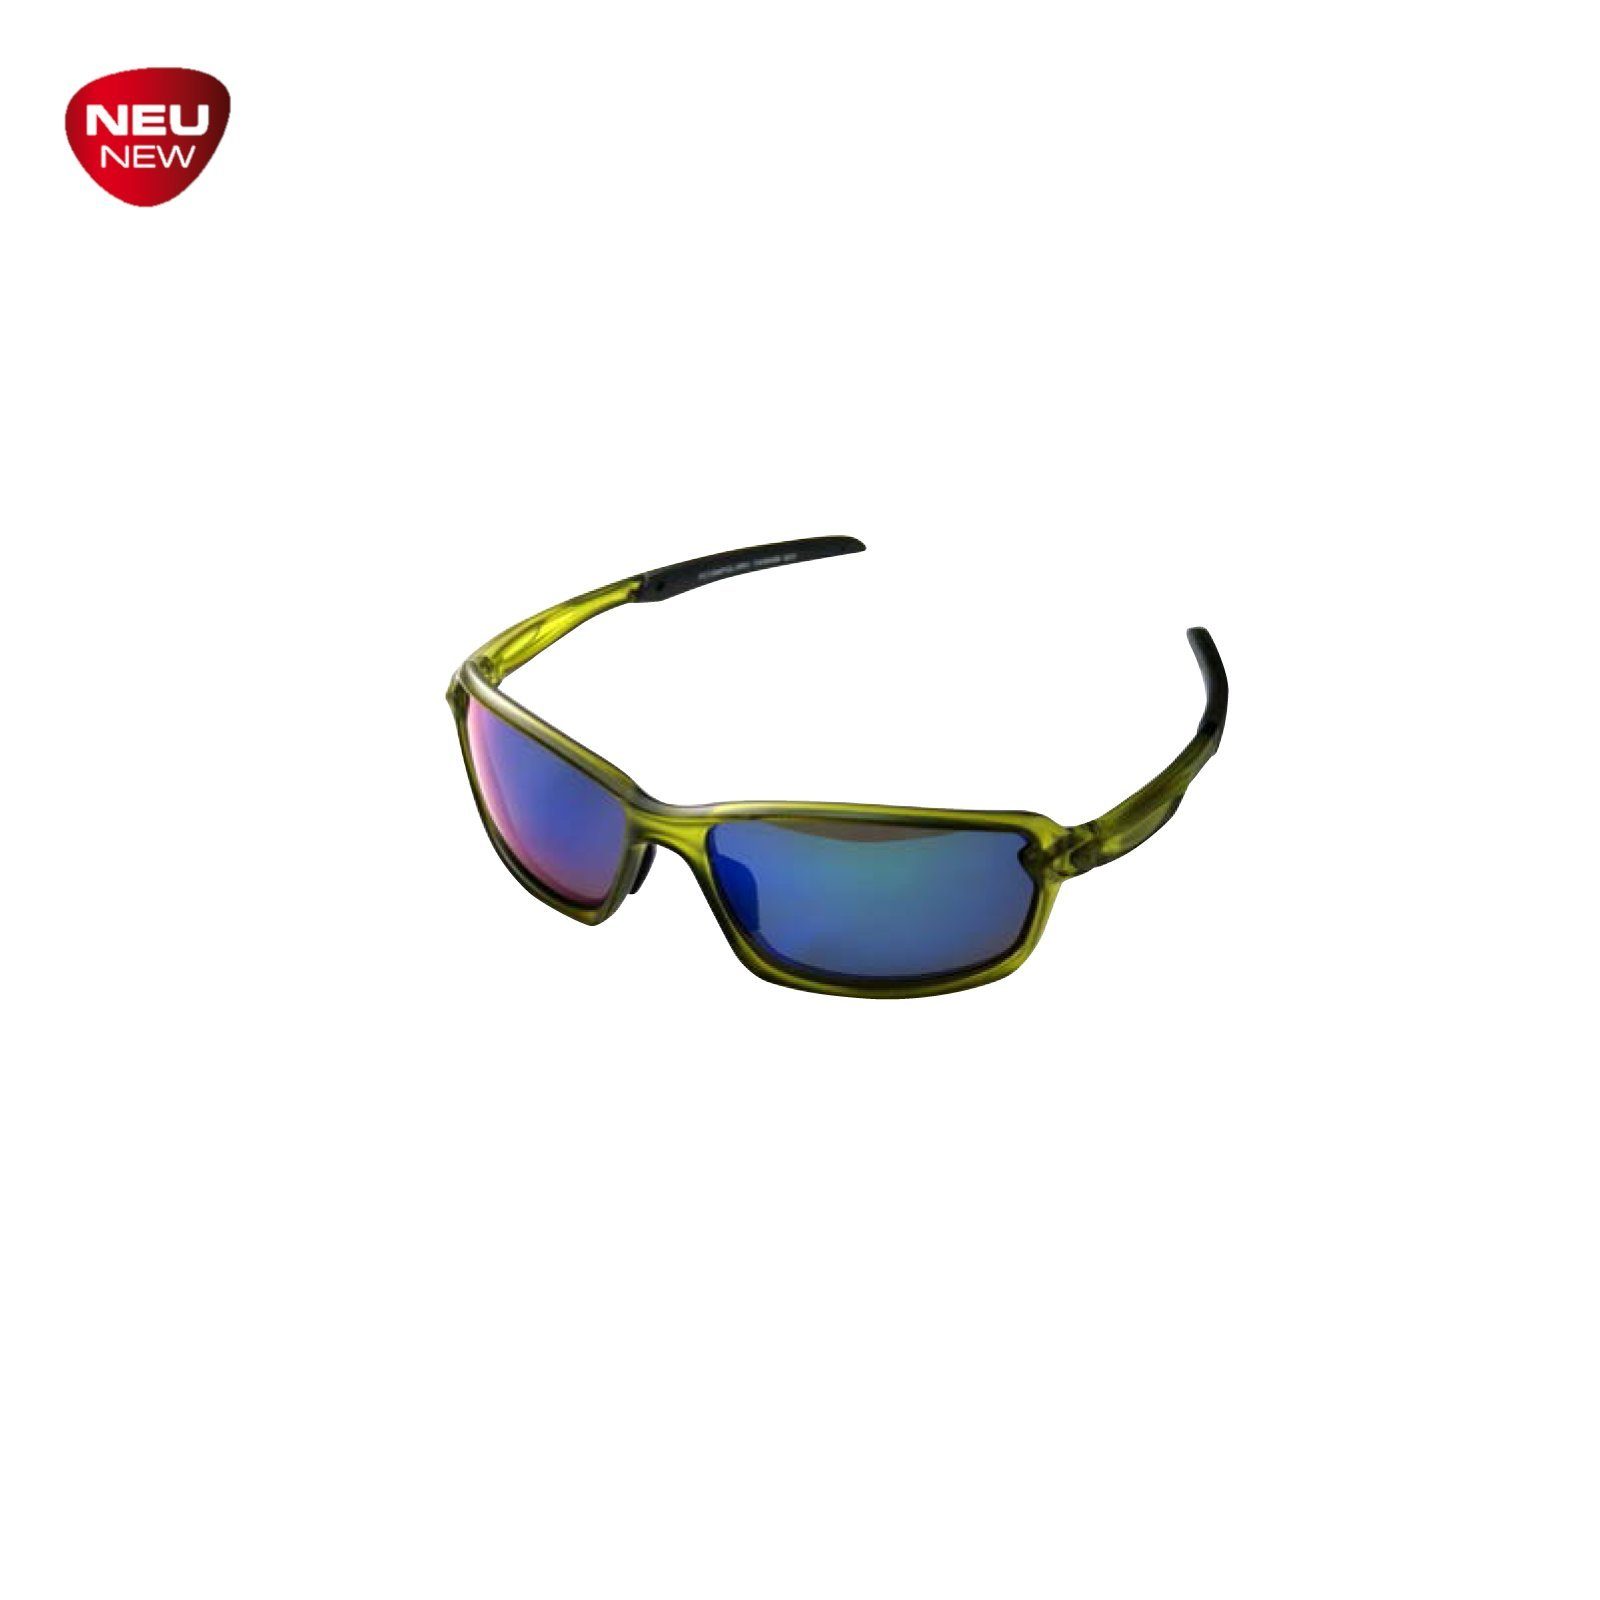 Behr Sonnenbrille TRENDEX Polarisationsbrille CIGATOO Brille Sonnenbrille UV-400 Schutz Spitzen- qualität. Mit UV-400 Schutz | Sonnenbrillen